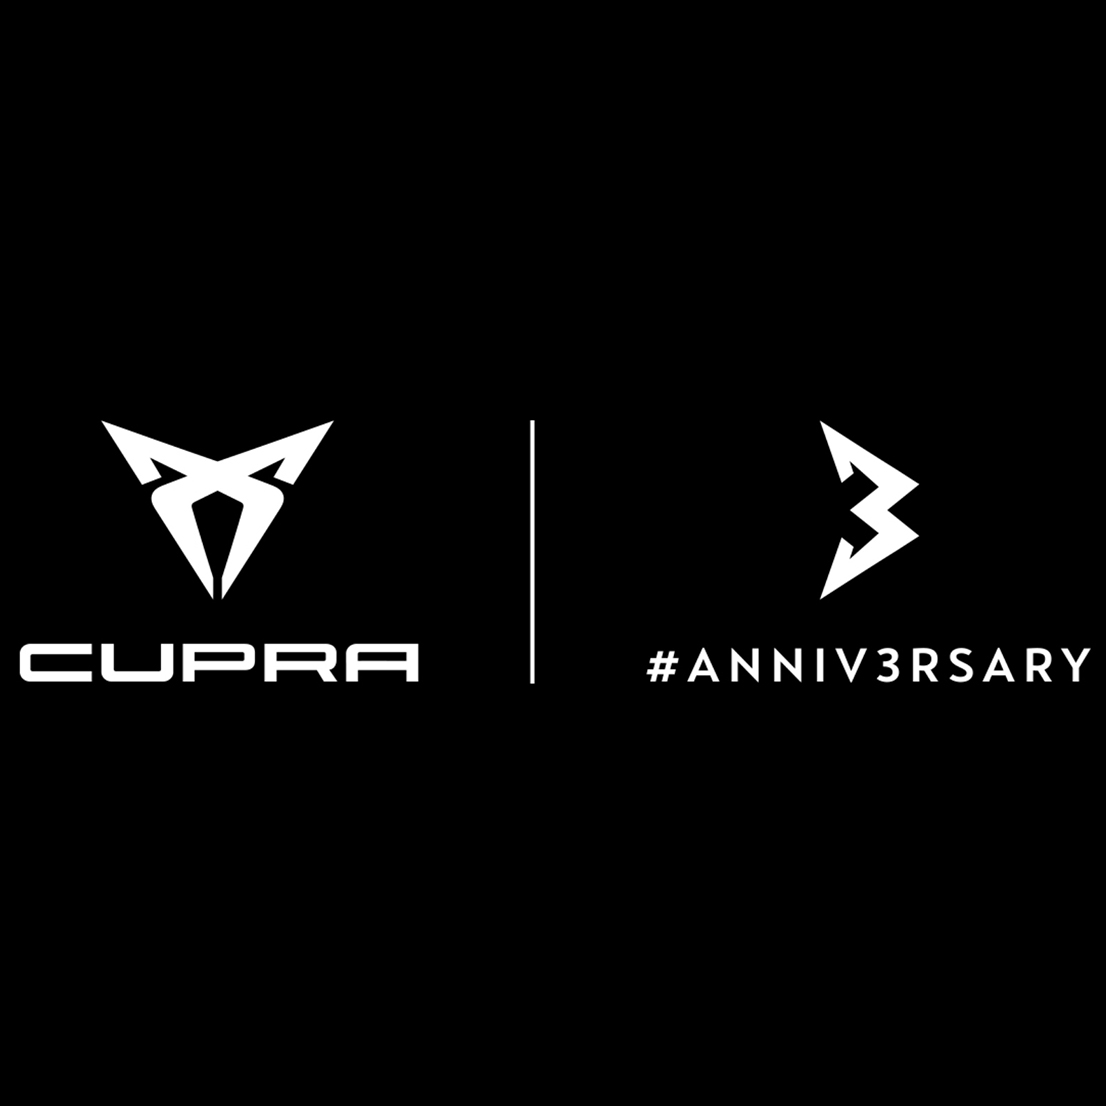 CUPRA's third anniversary logo